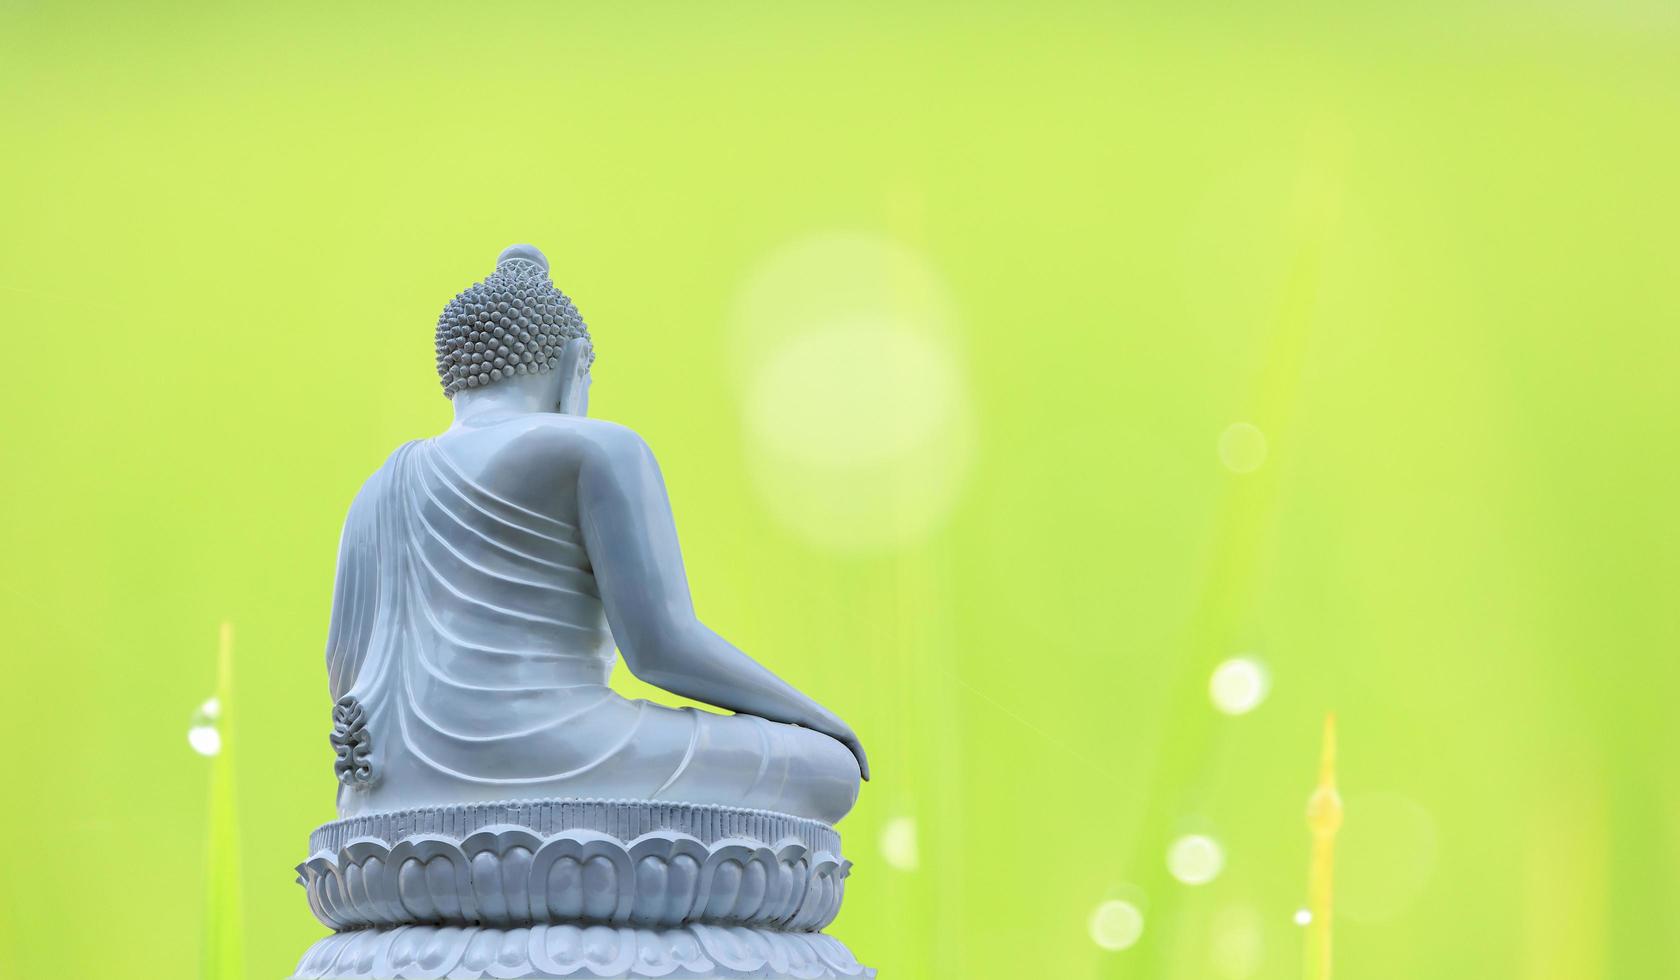 staty buddha vit på naturlig suddig bakgrund foto